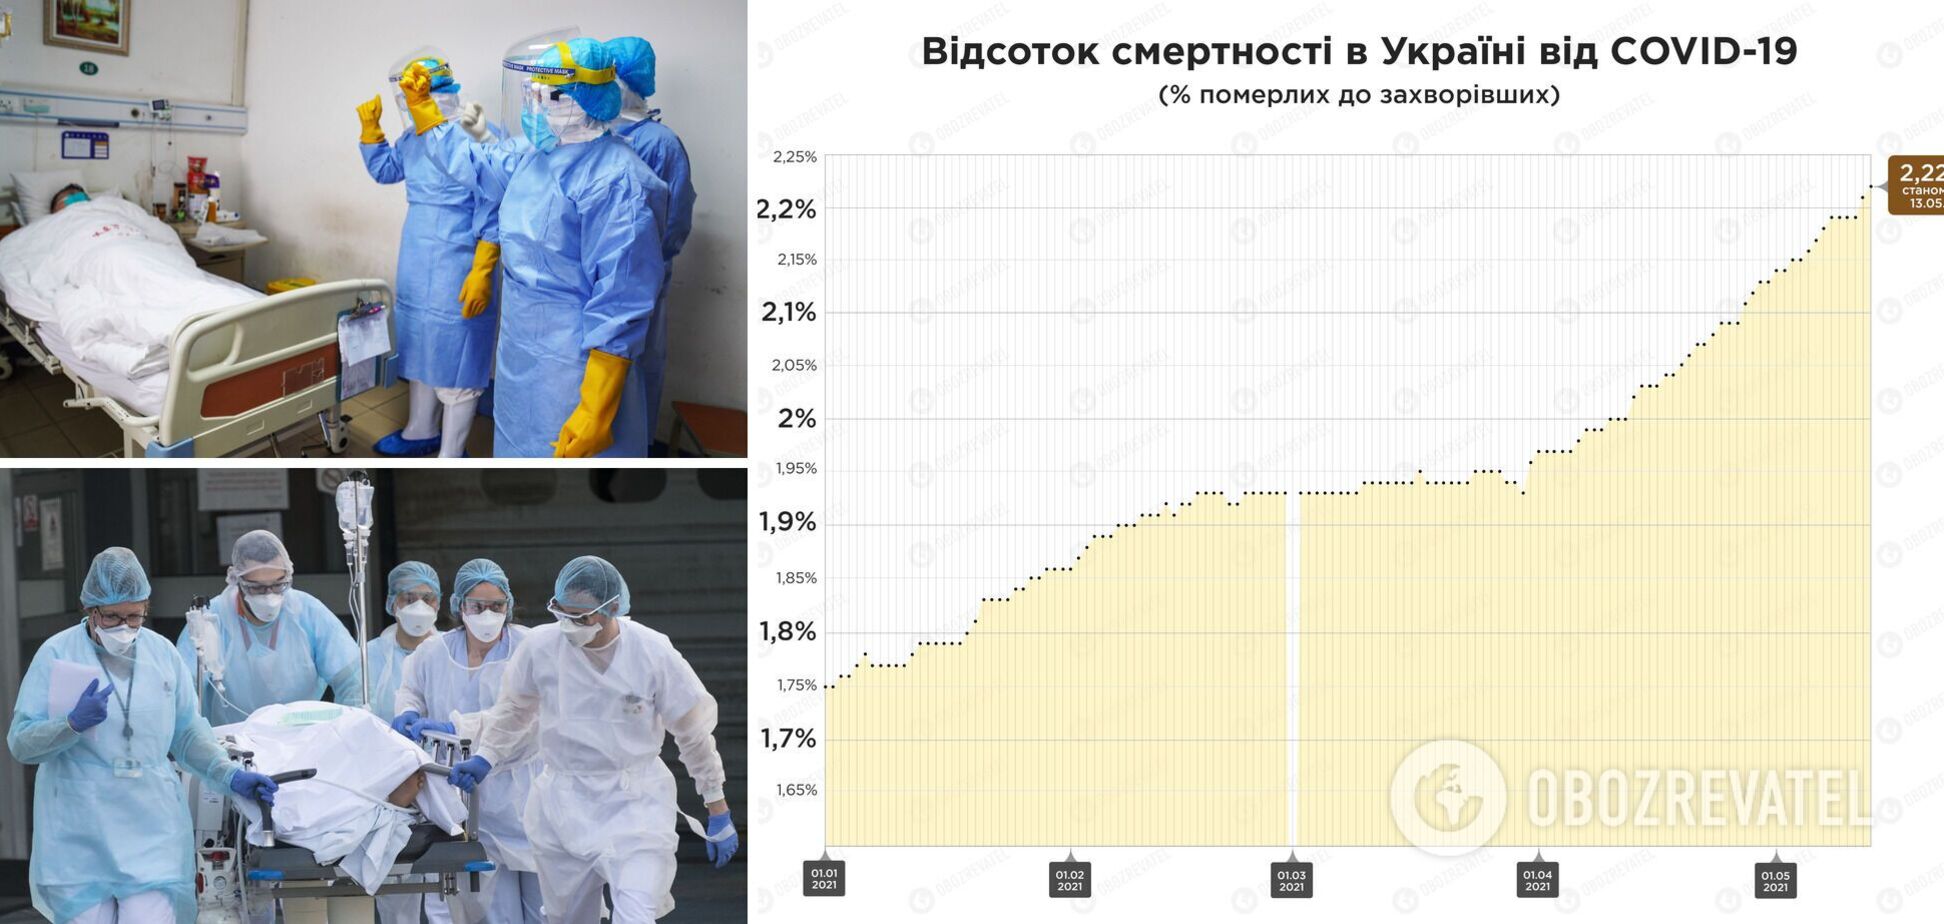 Смертность от коронавируса в Украине